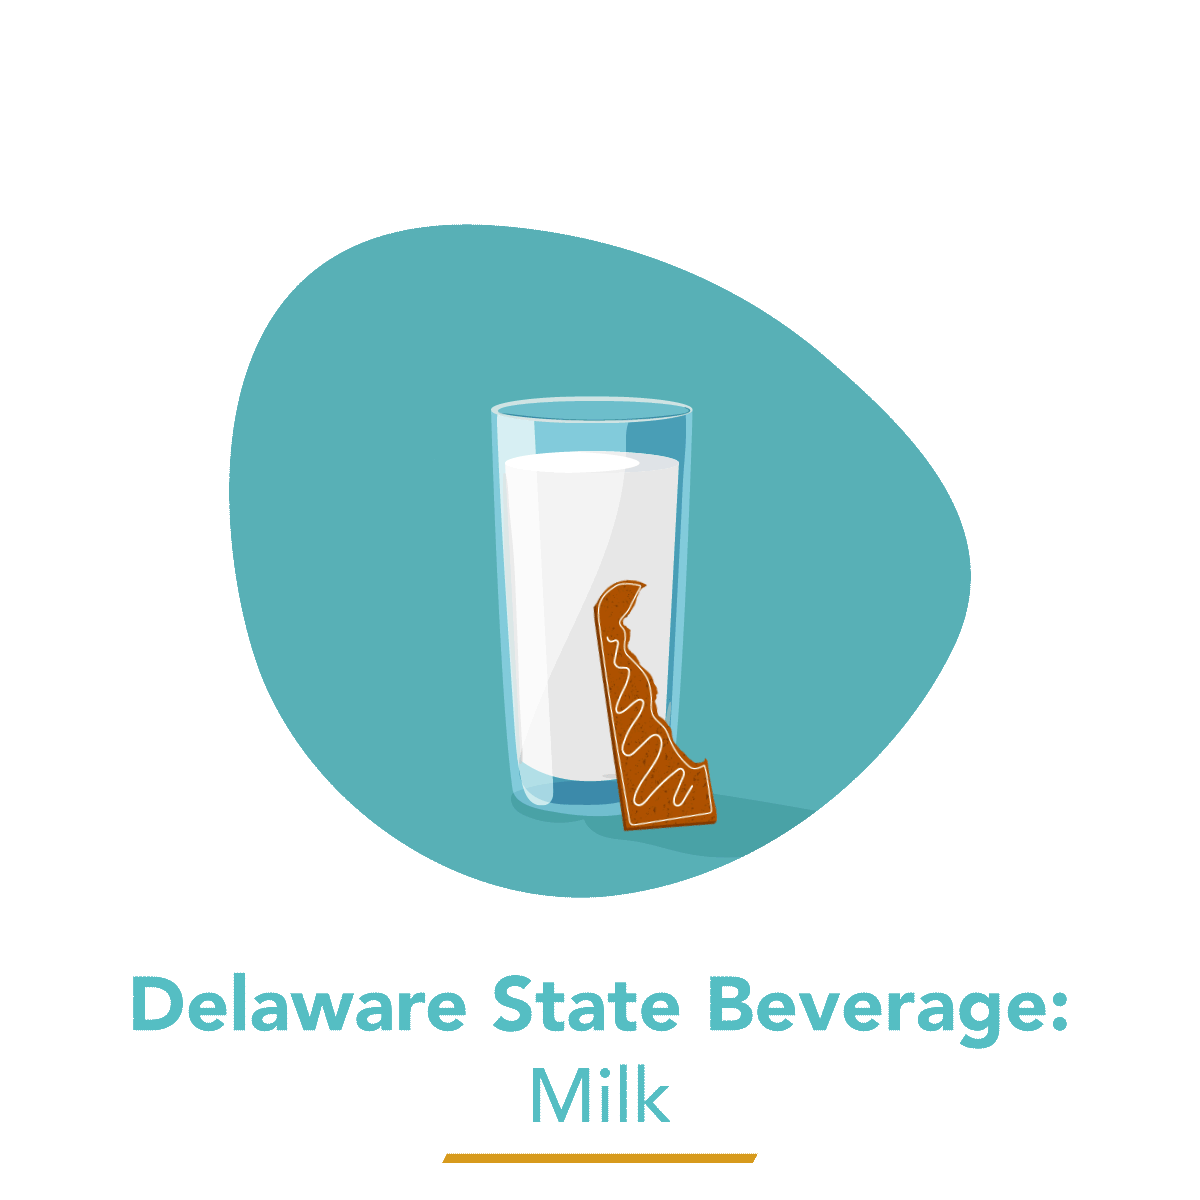  Milk - Delaware's State Beverage